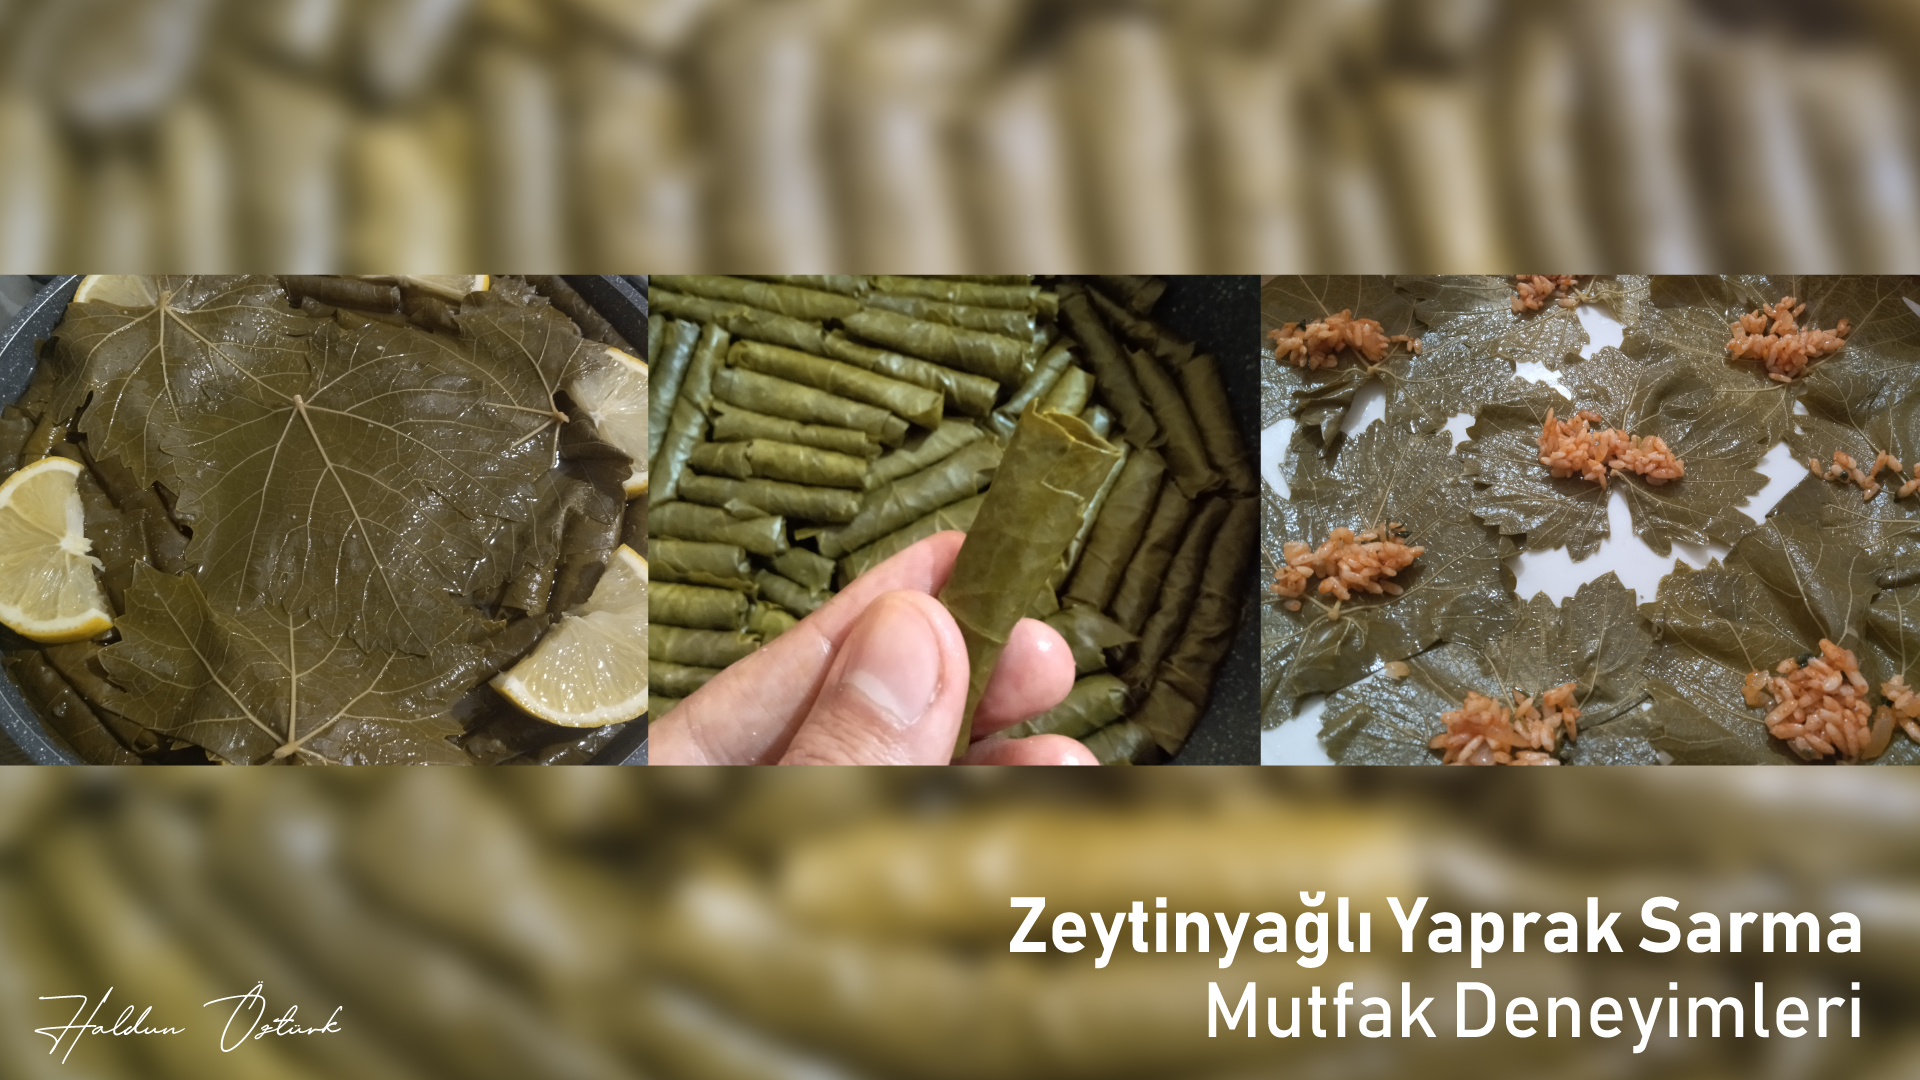 Zeytinyağlı Yaprak Sarma - Mutfak Deneyimleri - Haldun Öztürk